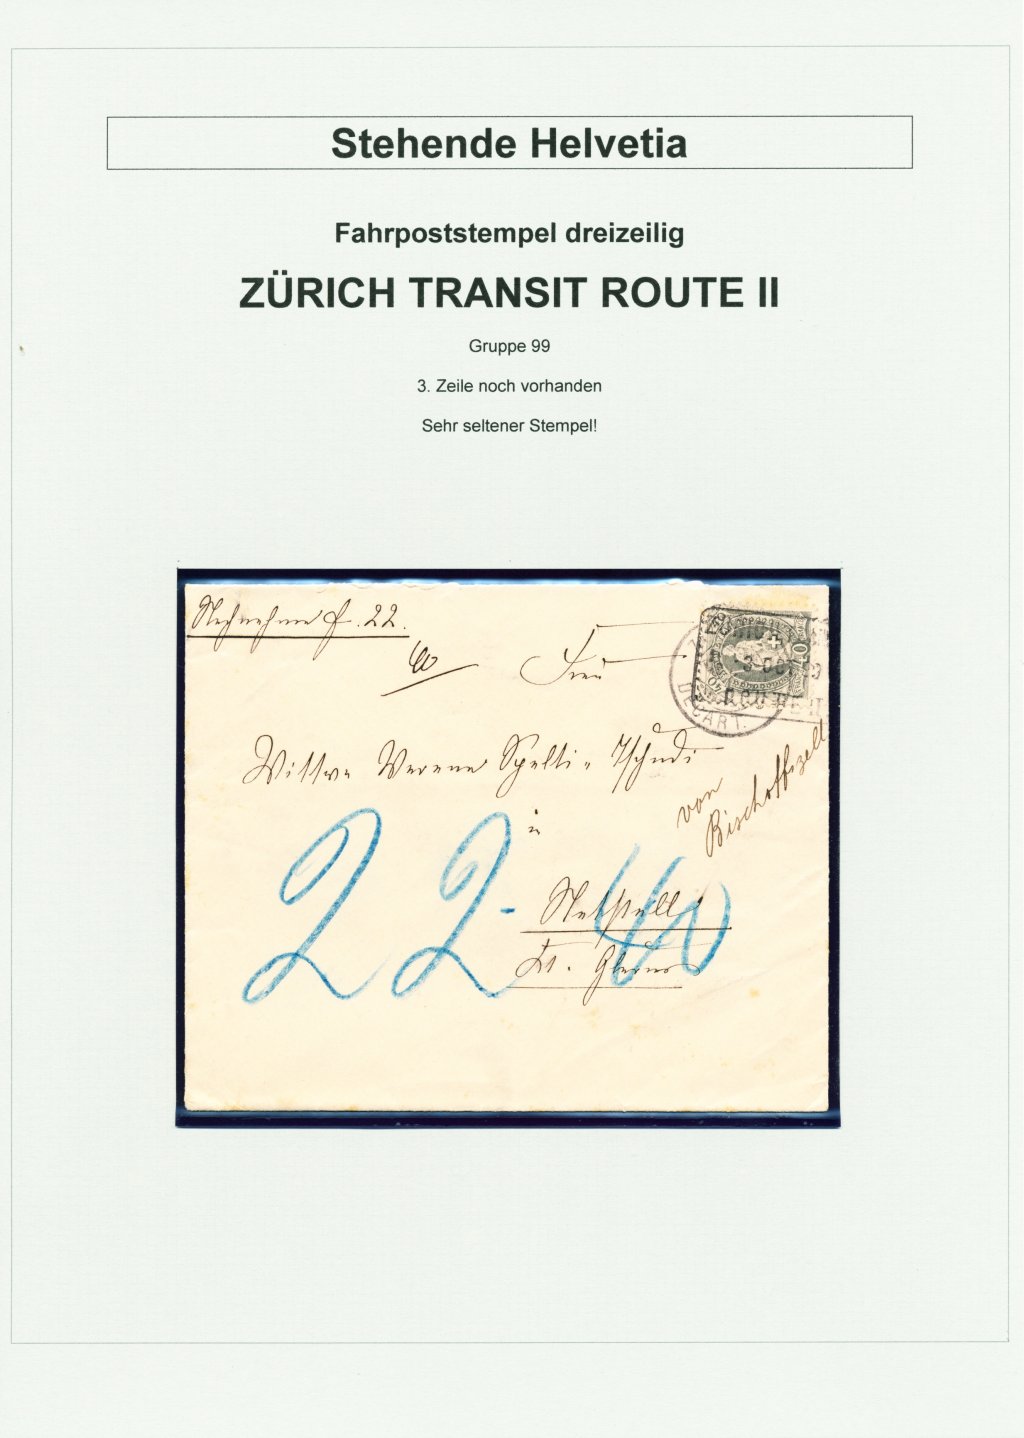 image-12501668-Gr._99_Zürich_Transit_Route_II-45c48.w640.jpg